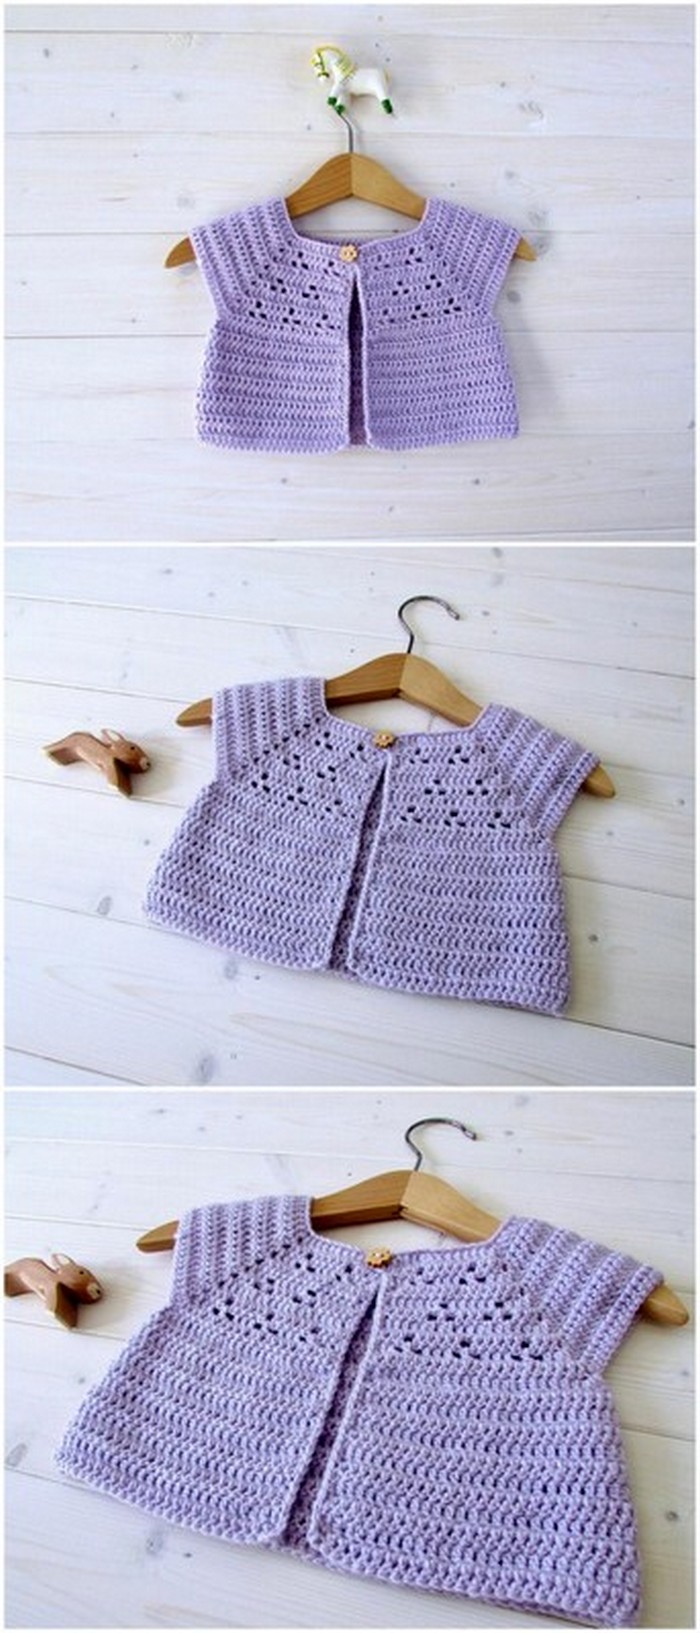 Crochet Baby Dress Pattern